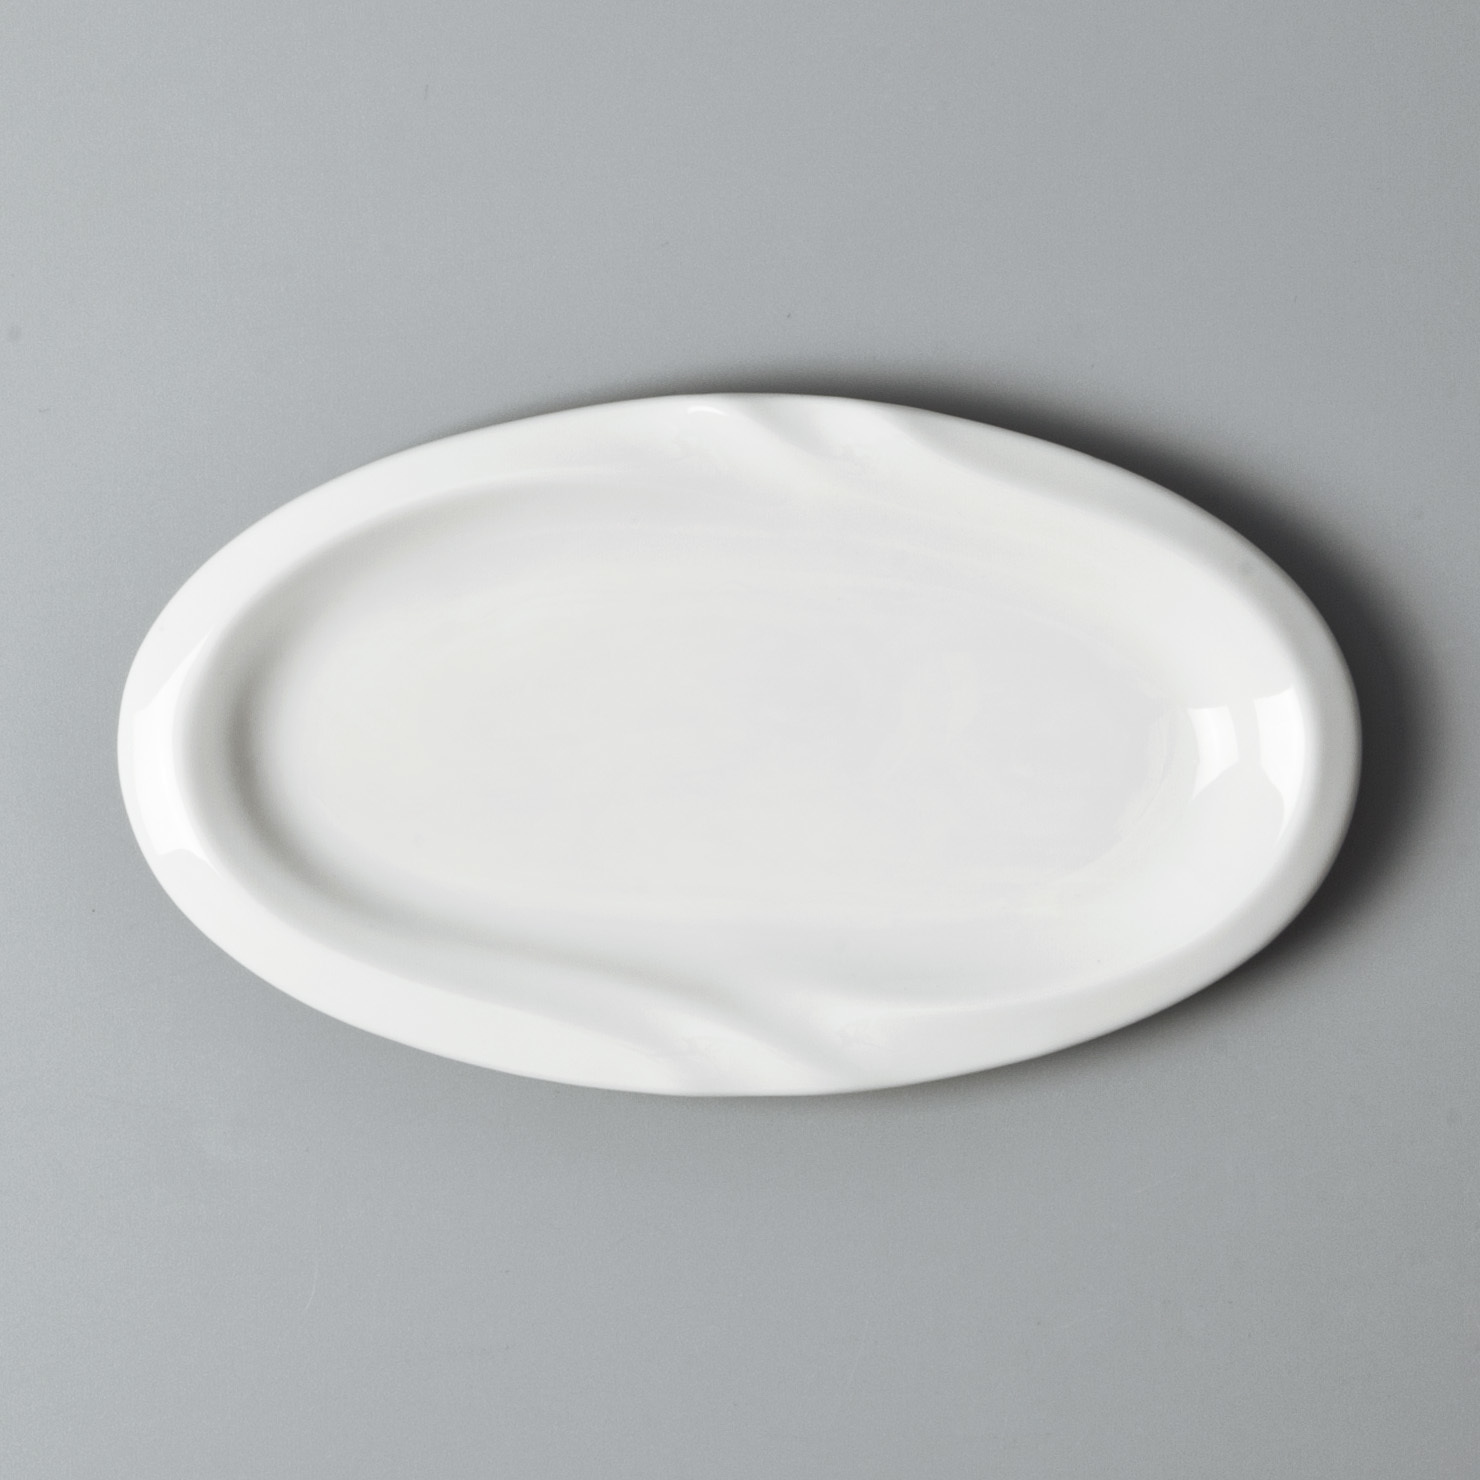 Custom white dinnerware sets for 8 factory for home